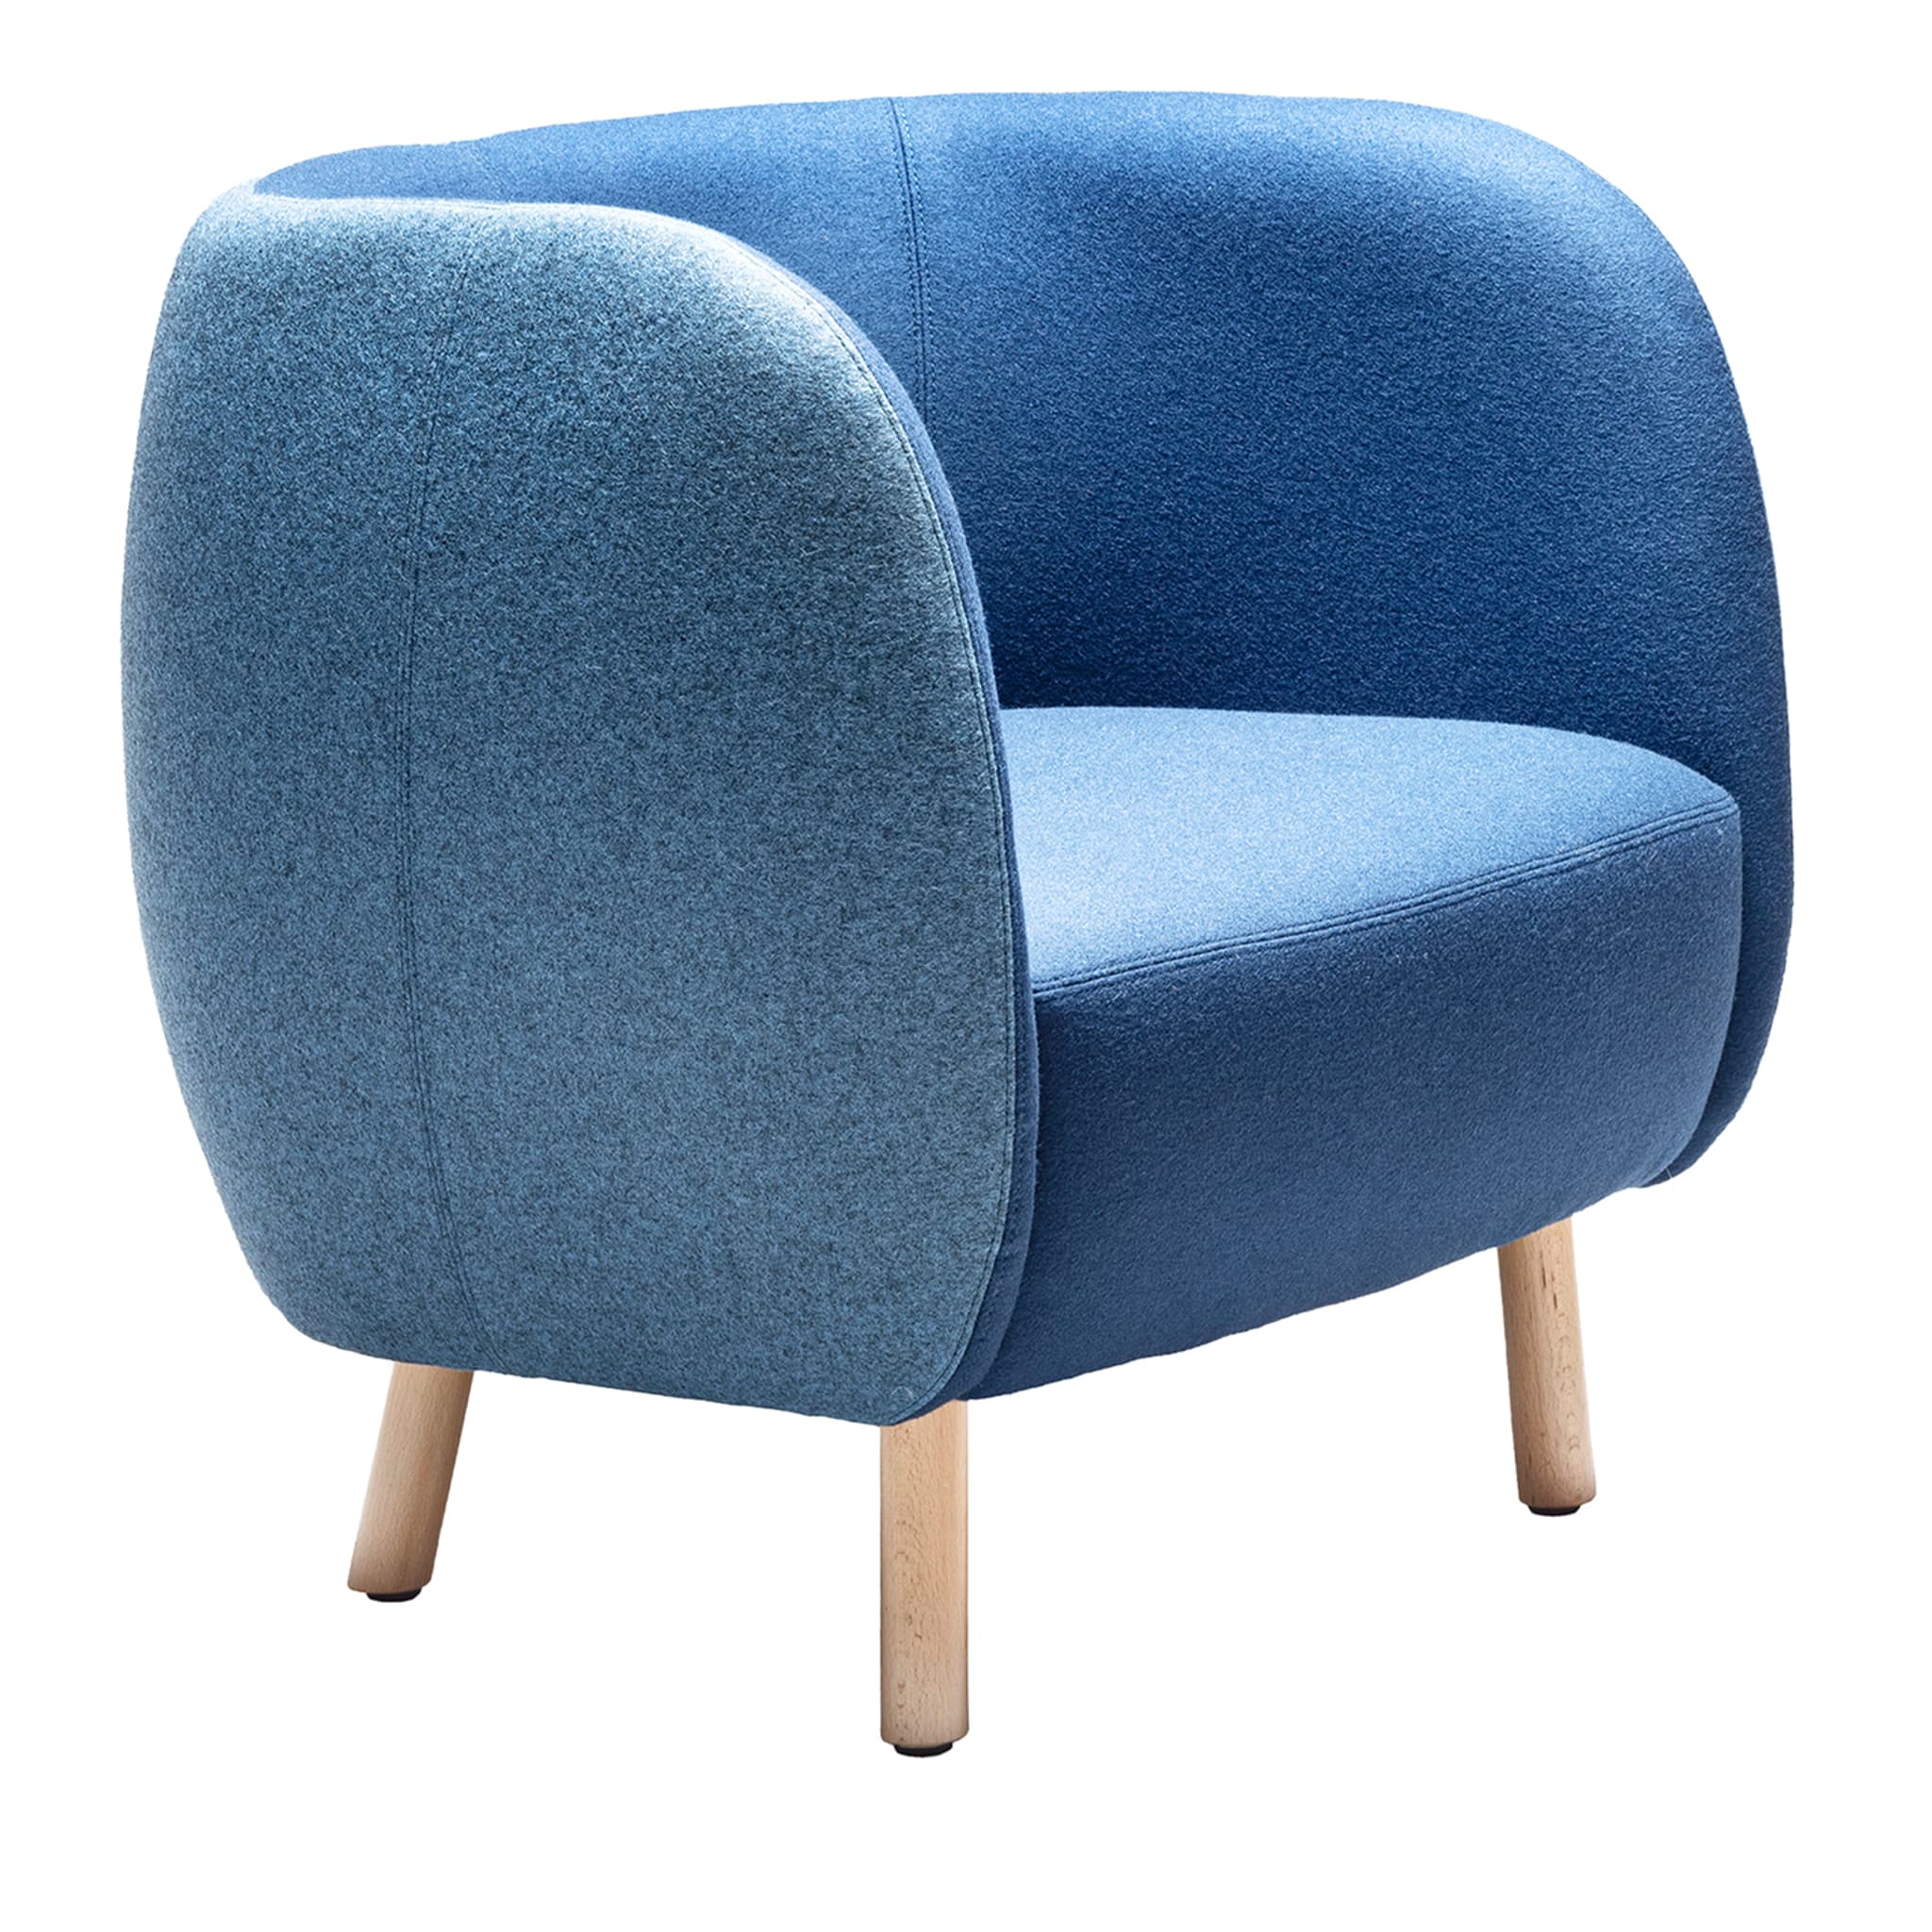 Mousse P Light Blue Chair - Main view